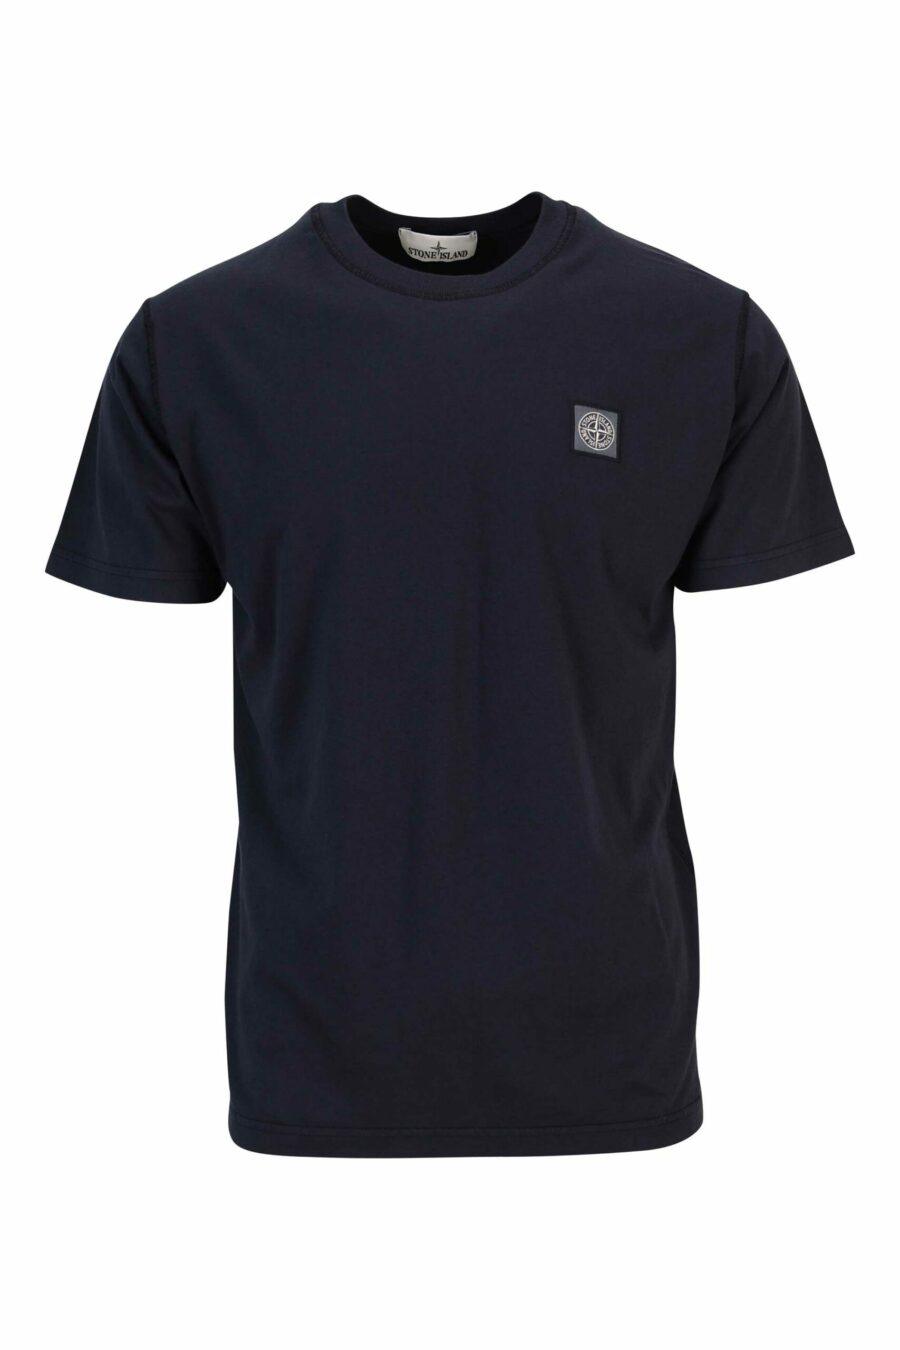 Camiseta azul oscuro con minilogo brújula - 8052572905155 scaled